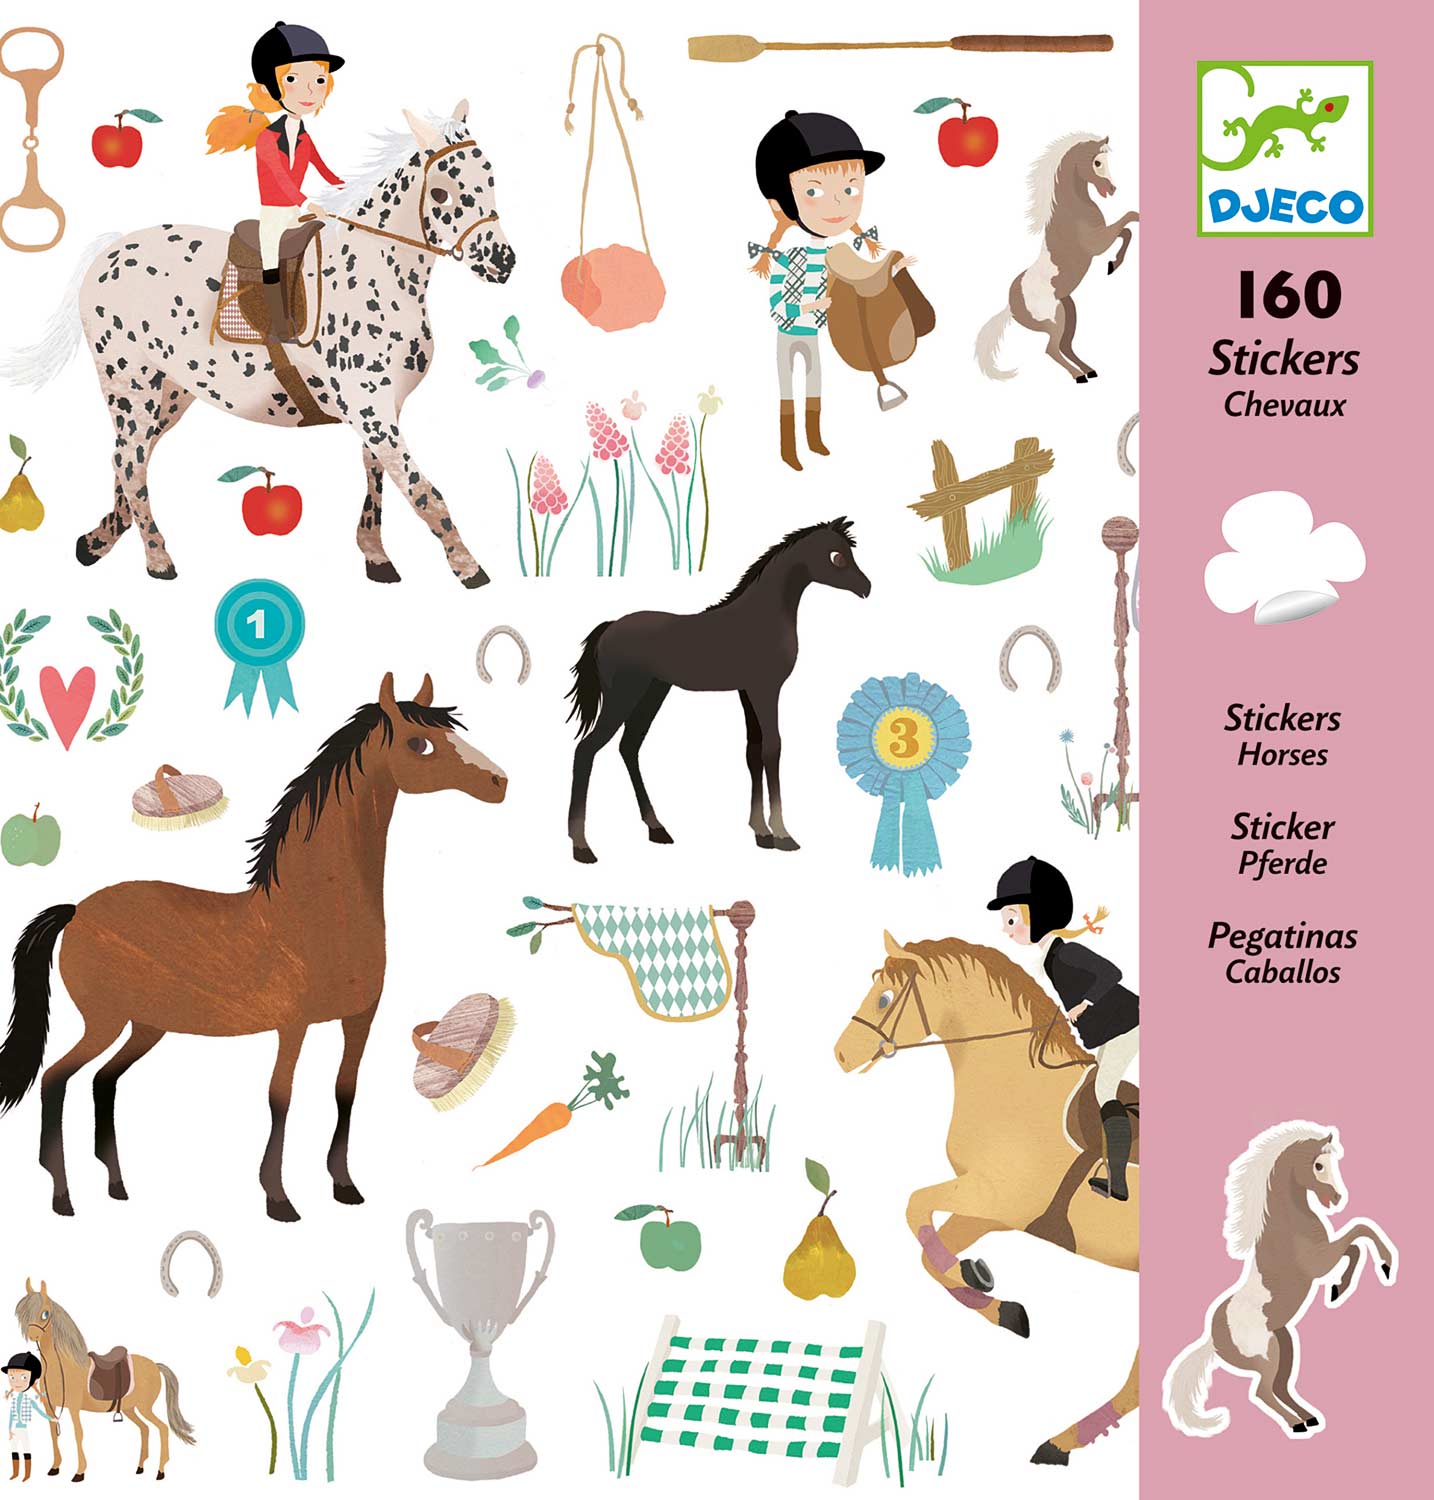 Horse Stickers Djeco